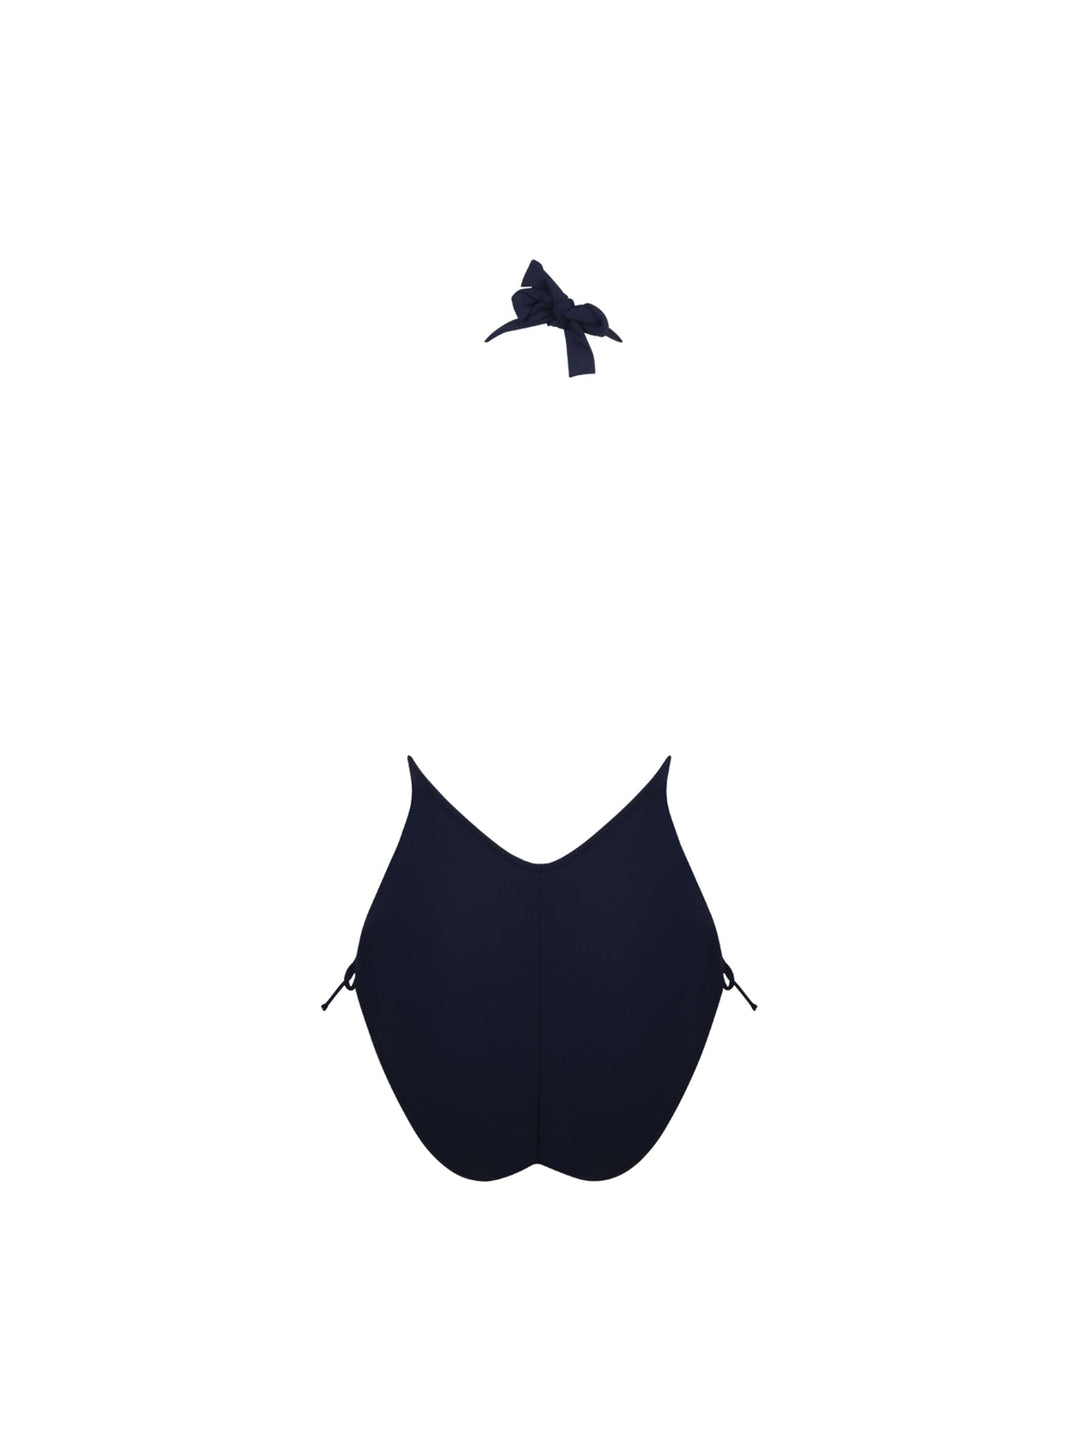 Antigel от Lise Charmel - Купальник с глубоким вырезом на спине La Chiquissima Морской купальник с глубоким вырезом Antigel от Lise Charmel Swimwear